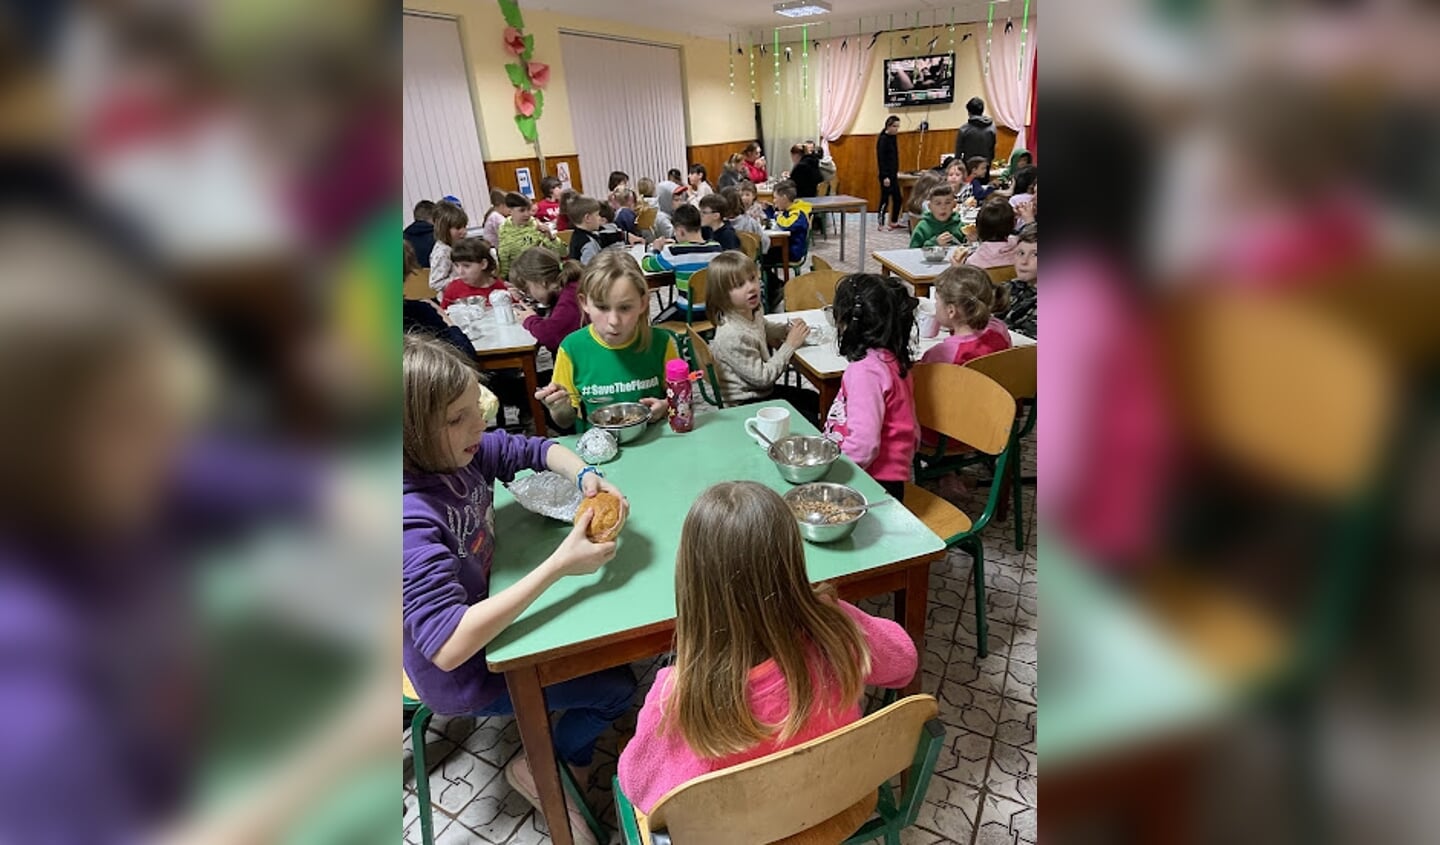 De straatarme kinderen in Roemenië krijgen onder meer voedingsmiddelen uitgereikt.